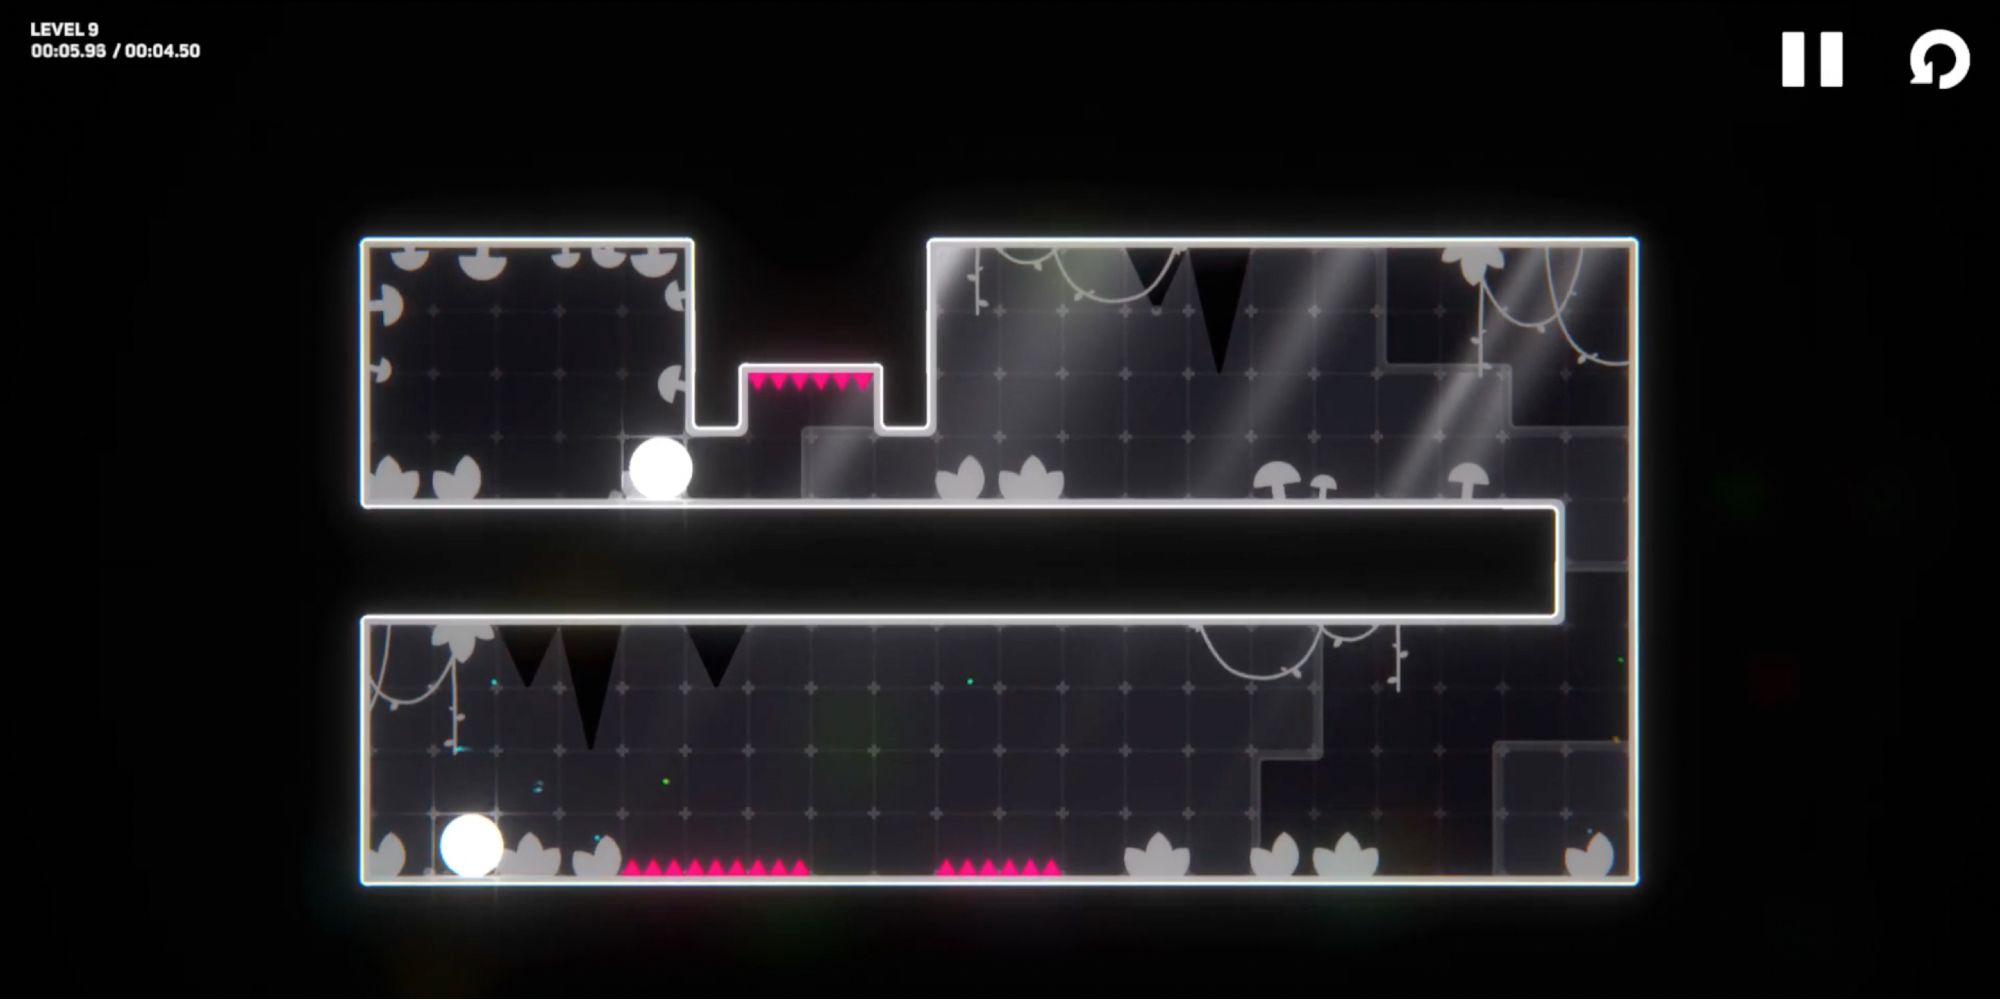 Kombinera - Следите за верхними панелями - Игрок двигается осторожно, чтобы не попасть под гвозди.